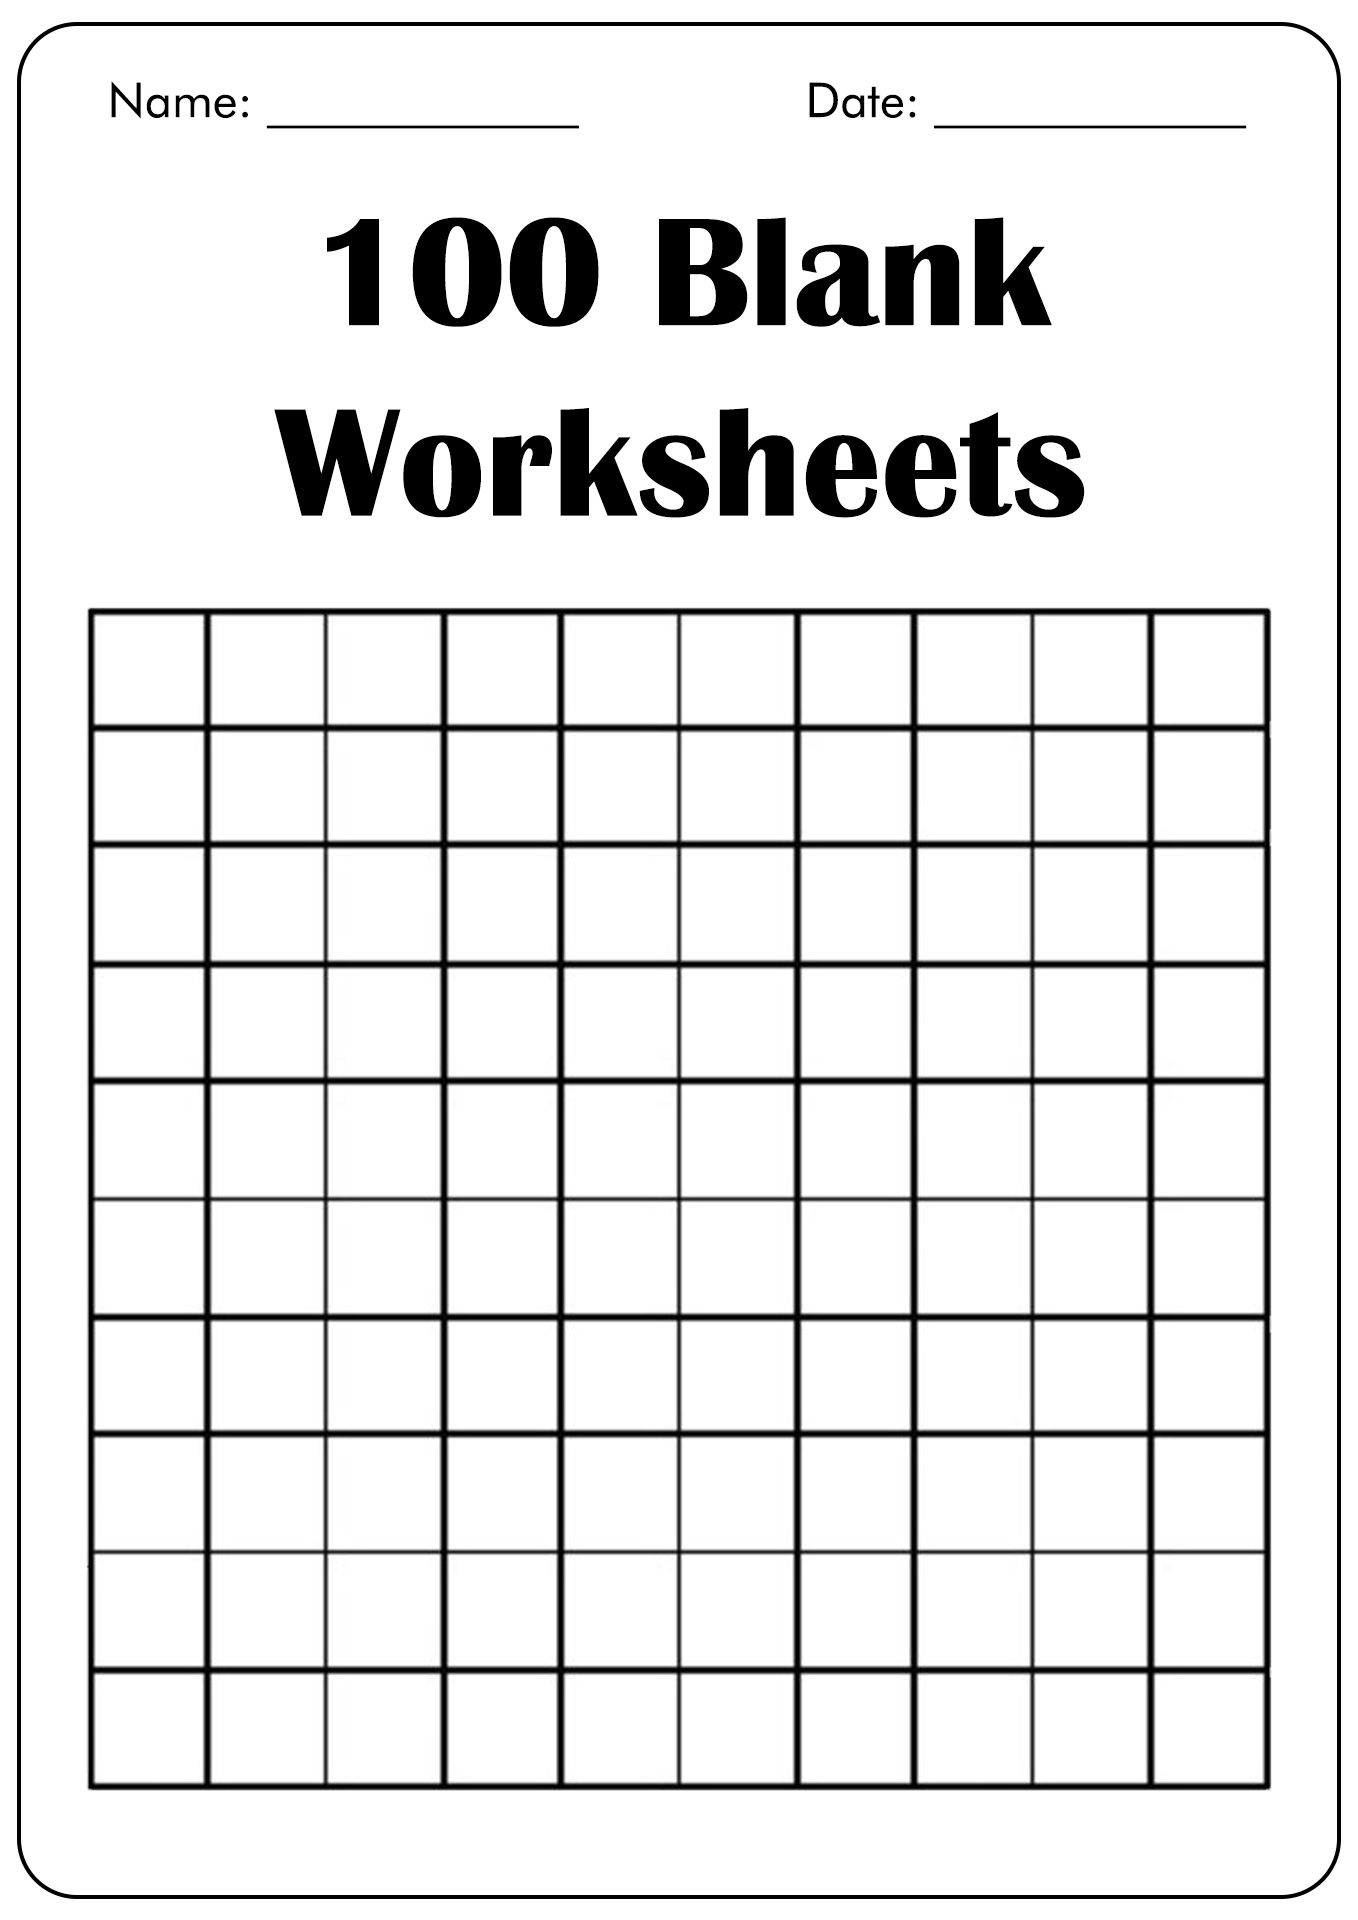 100 Blank Worksheet Image